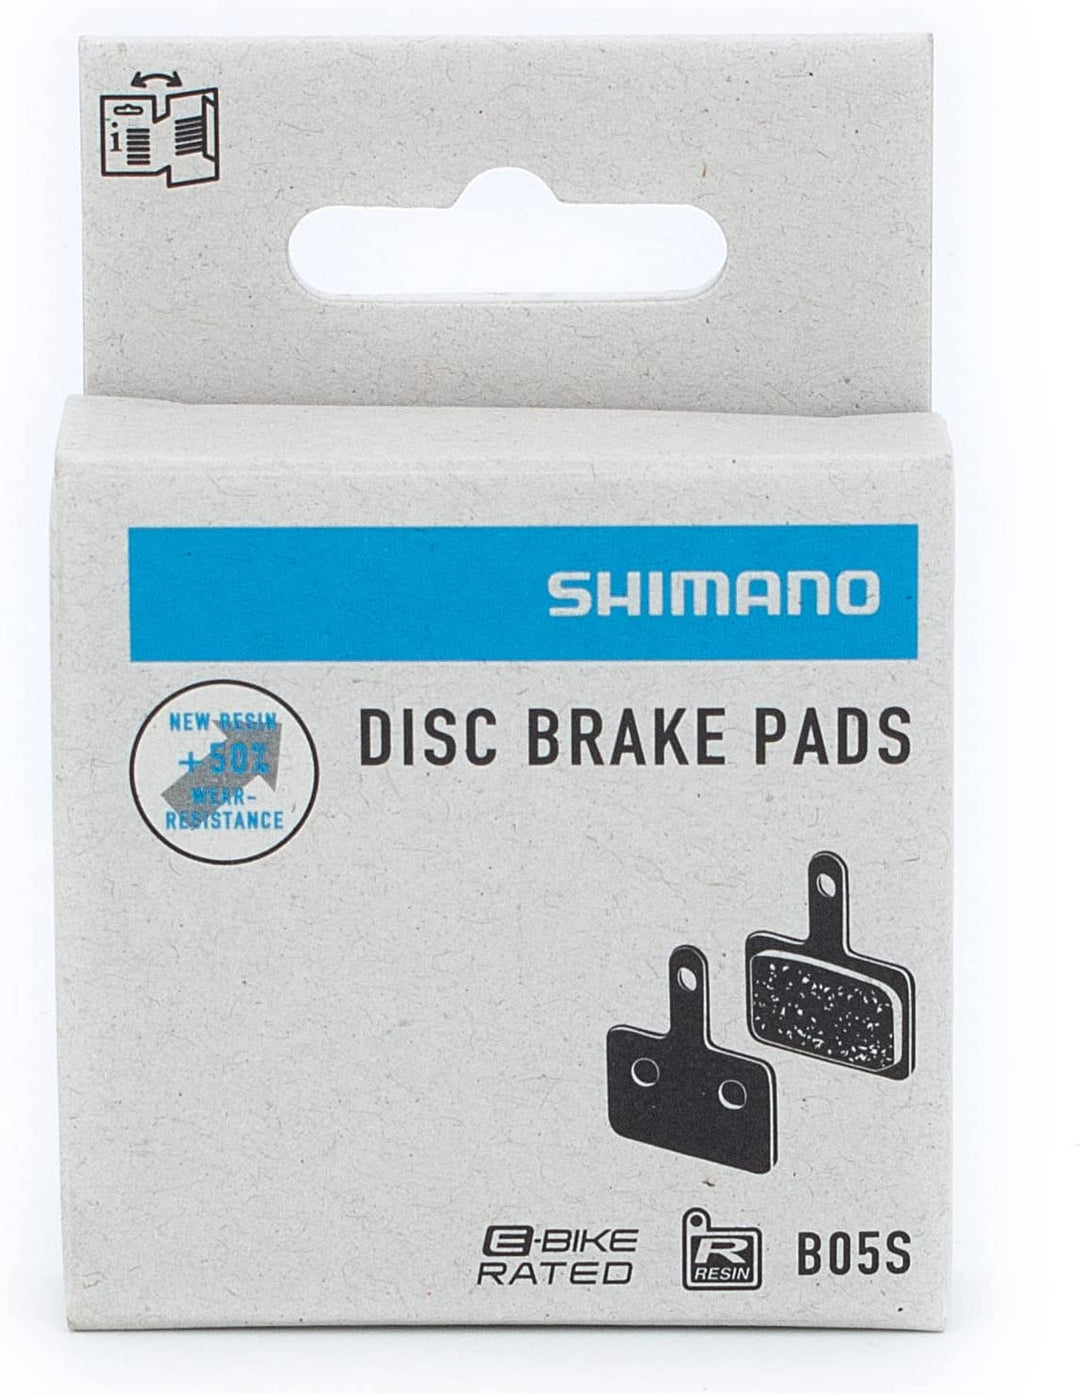 B05S brake pads (resin)